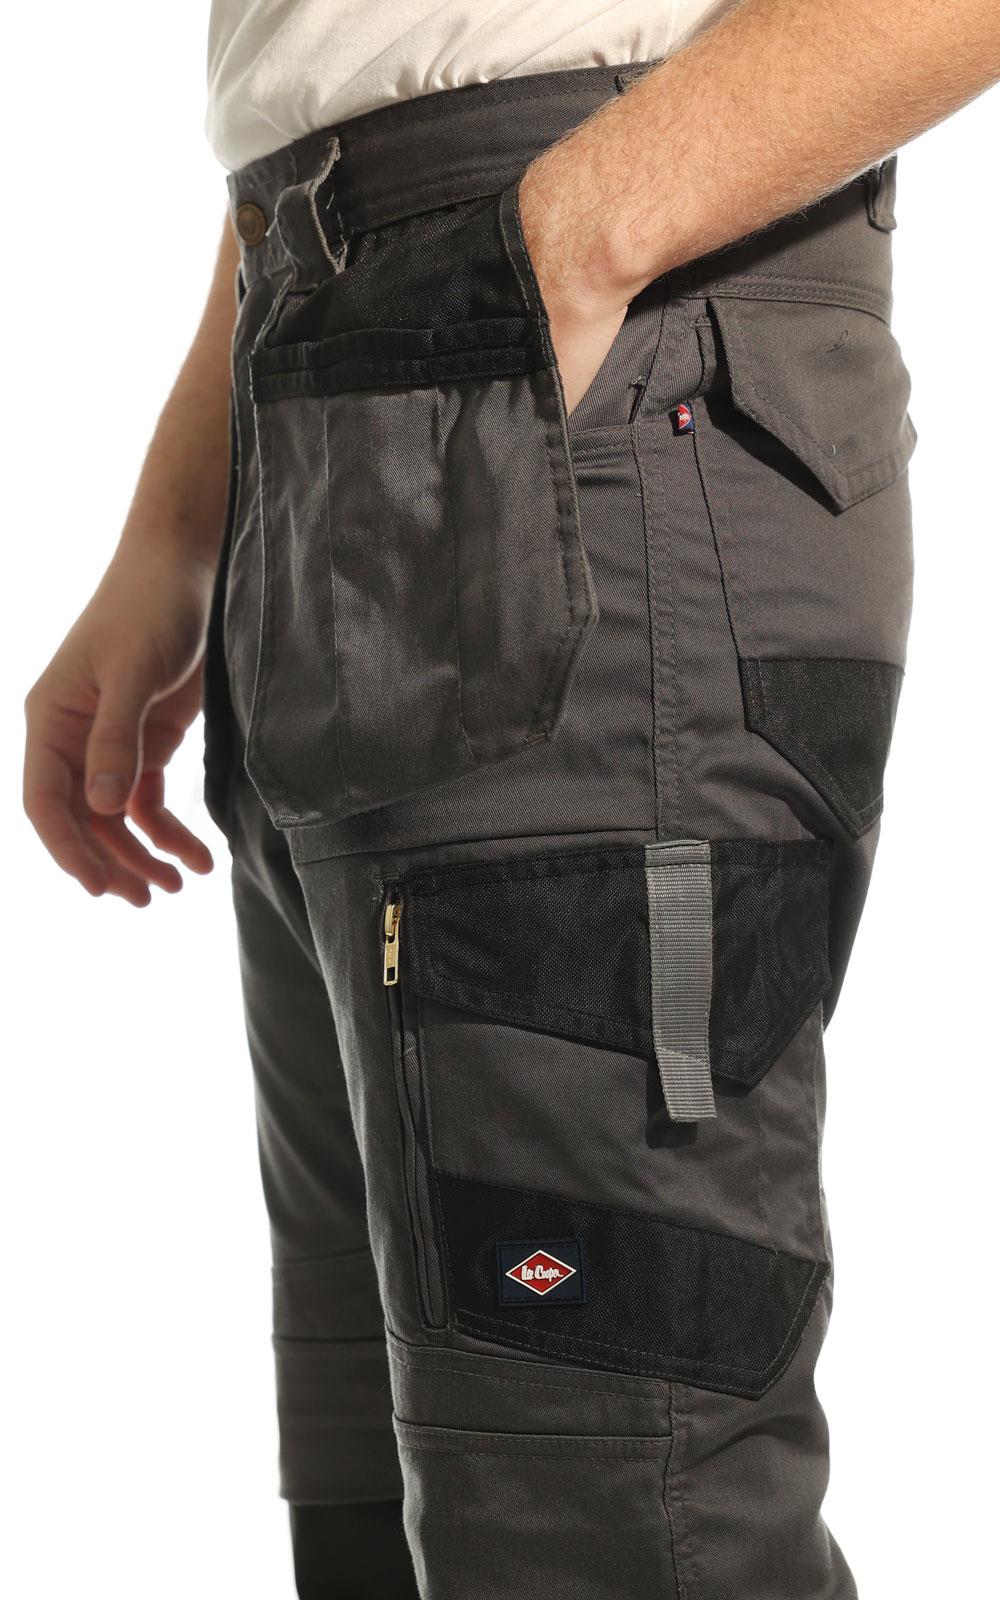 Lee Cooper Workwear Mens Multi Pocket Heavy Duty Classic Work Cargo Trousers  | eBay